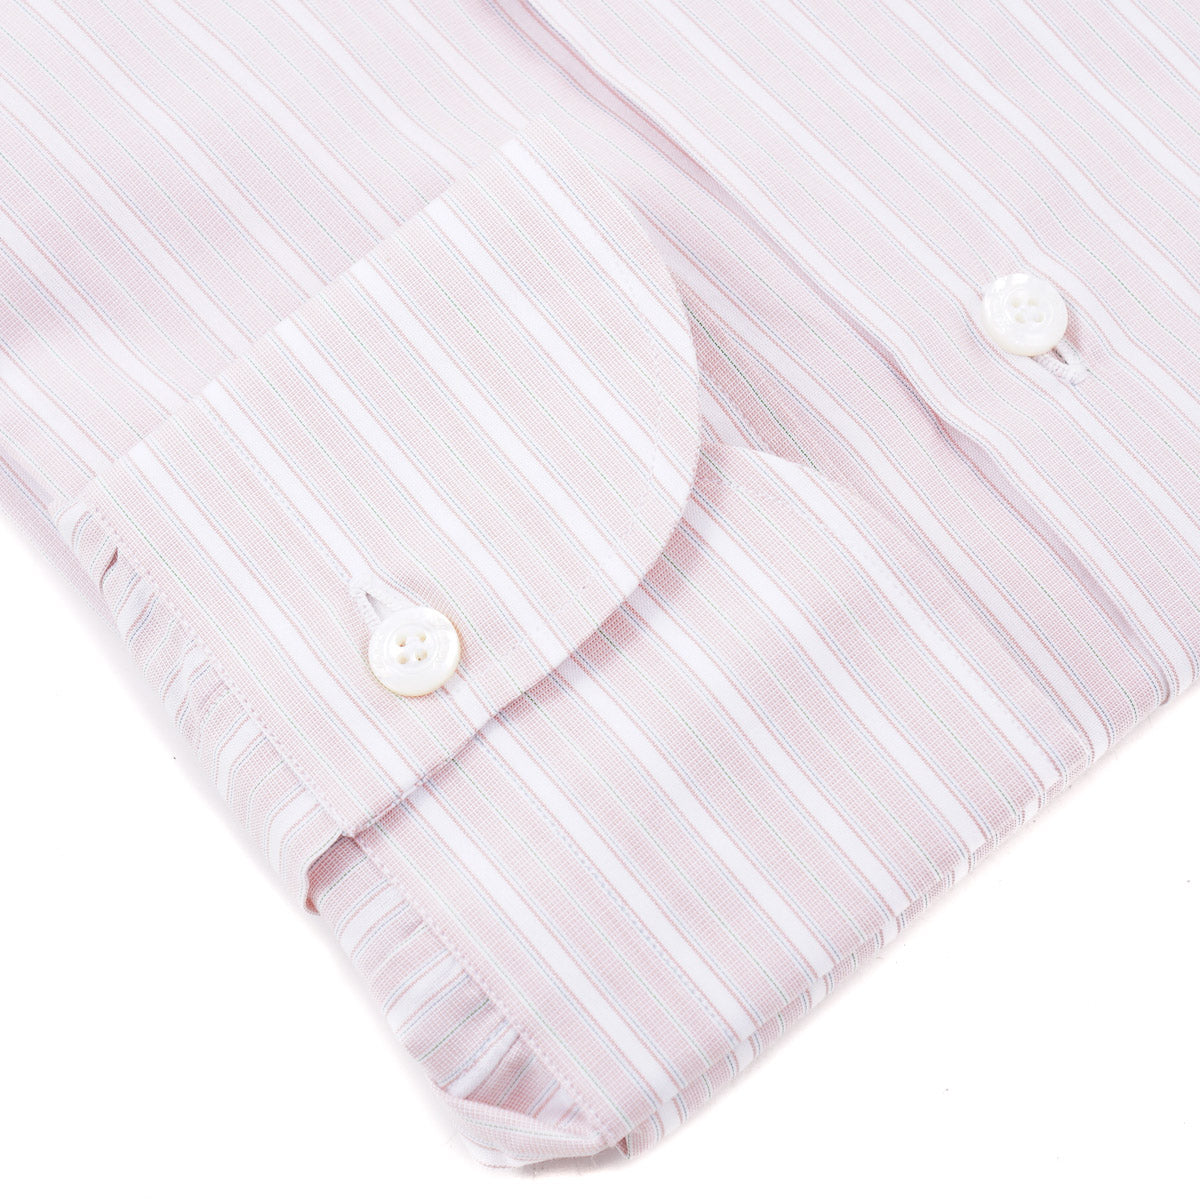 Finamore Lightweight Cotton Dress Shirt - Top Shelf Apparel